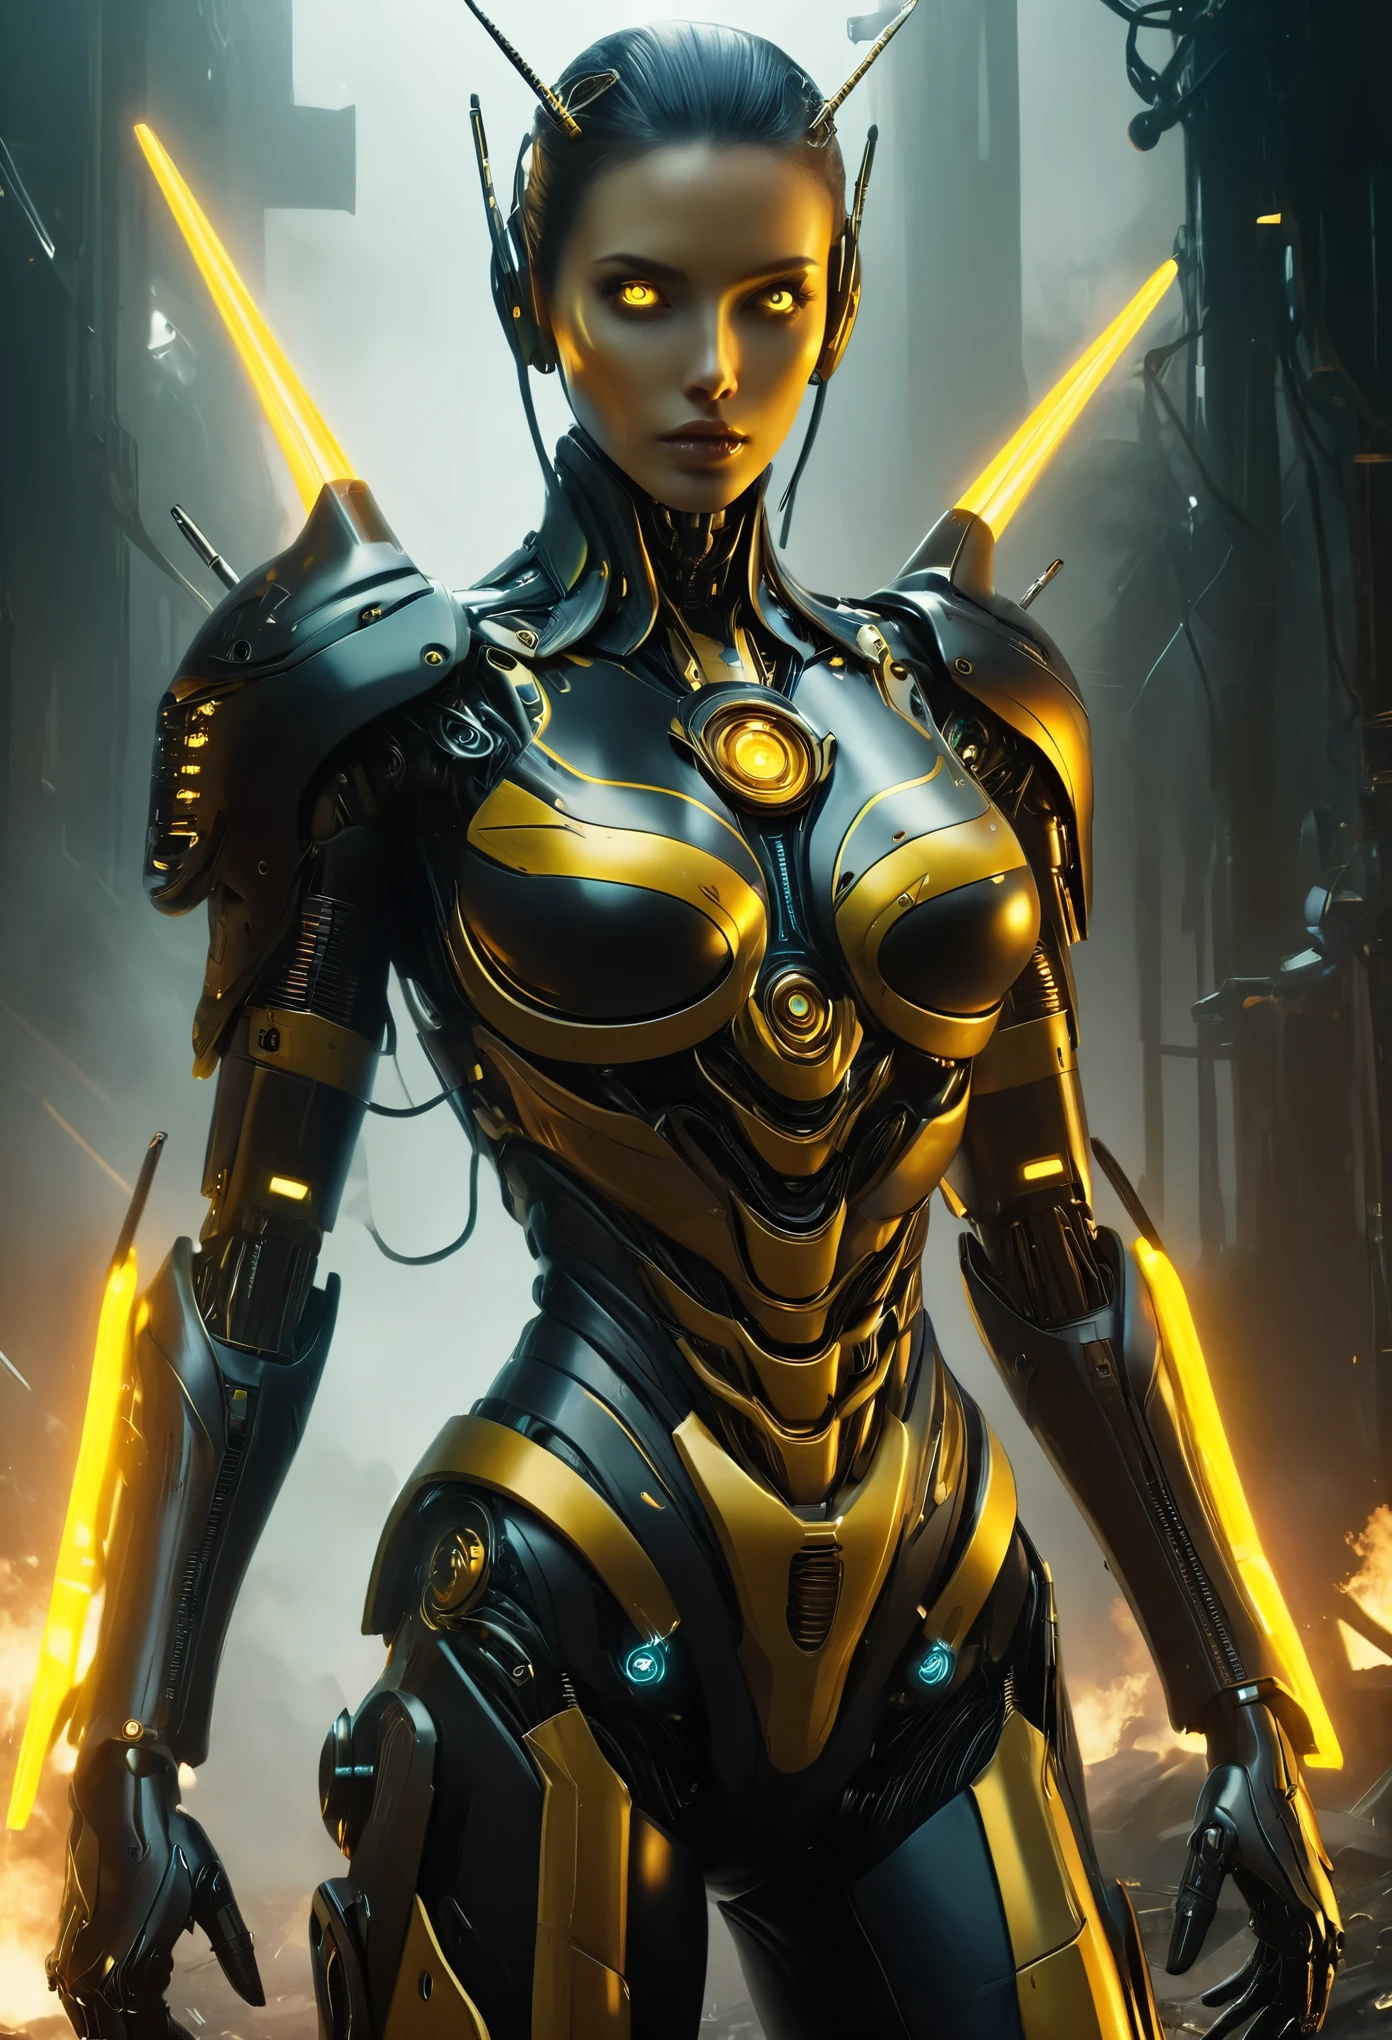 (最好的质量, 4K, 8千, 高清, 杰作:1.2), (极其详细, 实际的, 真实感:1.37),可怕的女性战斗机器人与人类女性和大黄蜂的结合, 采用黄色和黑色配色方案, 巨大的复眼, 和未来科技. 该机器人外表凶猛，身体健壮. 它配备了先进的武器和装甲，展现出复杂的机械细节. 该机器人的面部兼具人类特征和黄蜂的显著特征, 包括锋利的下颚和触角. 它的眼睛特别大, 由无数面组成，散发出令人生畏的光芒. 机器人的金属外骨骼主要呈黄色, 带有醒目的黑色点缀，给人一种威胁的感觉. 盔甲光滑无缝, 与机器人身体无缝融合. 场景设定在未来战场, 战斗机器人周围都是摇摇欲坠的建筑物和残骸. 火焰和浓烟从被毁坏的建筑物中滚滚而来, 唤起一种混乱的破坏感. 场景中的灯光非常引人注目, 刺眼的聚光灯在机器人身上投射出长长的阴影, 强调其雄伟的形象. 整体色调以黄色和黑色为主, 营造强烈而威胁性的氛围. 图像质量达到最高标准, 捕捉战斗机器人和周围环境的每一个复杂细节.(北达科他州:1.3)